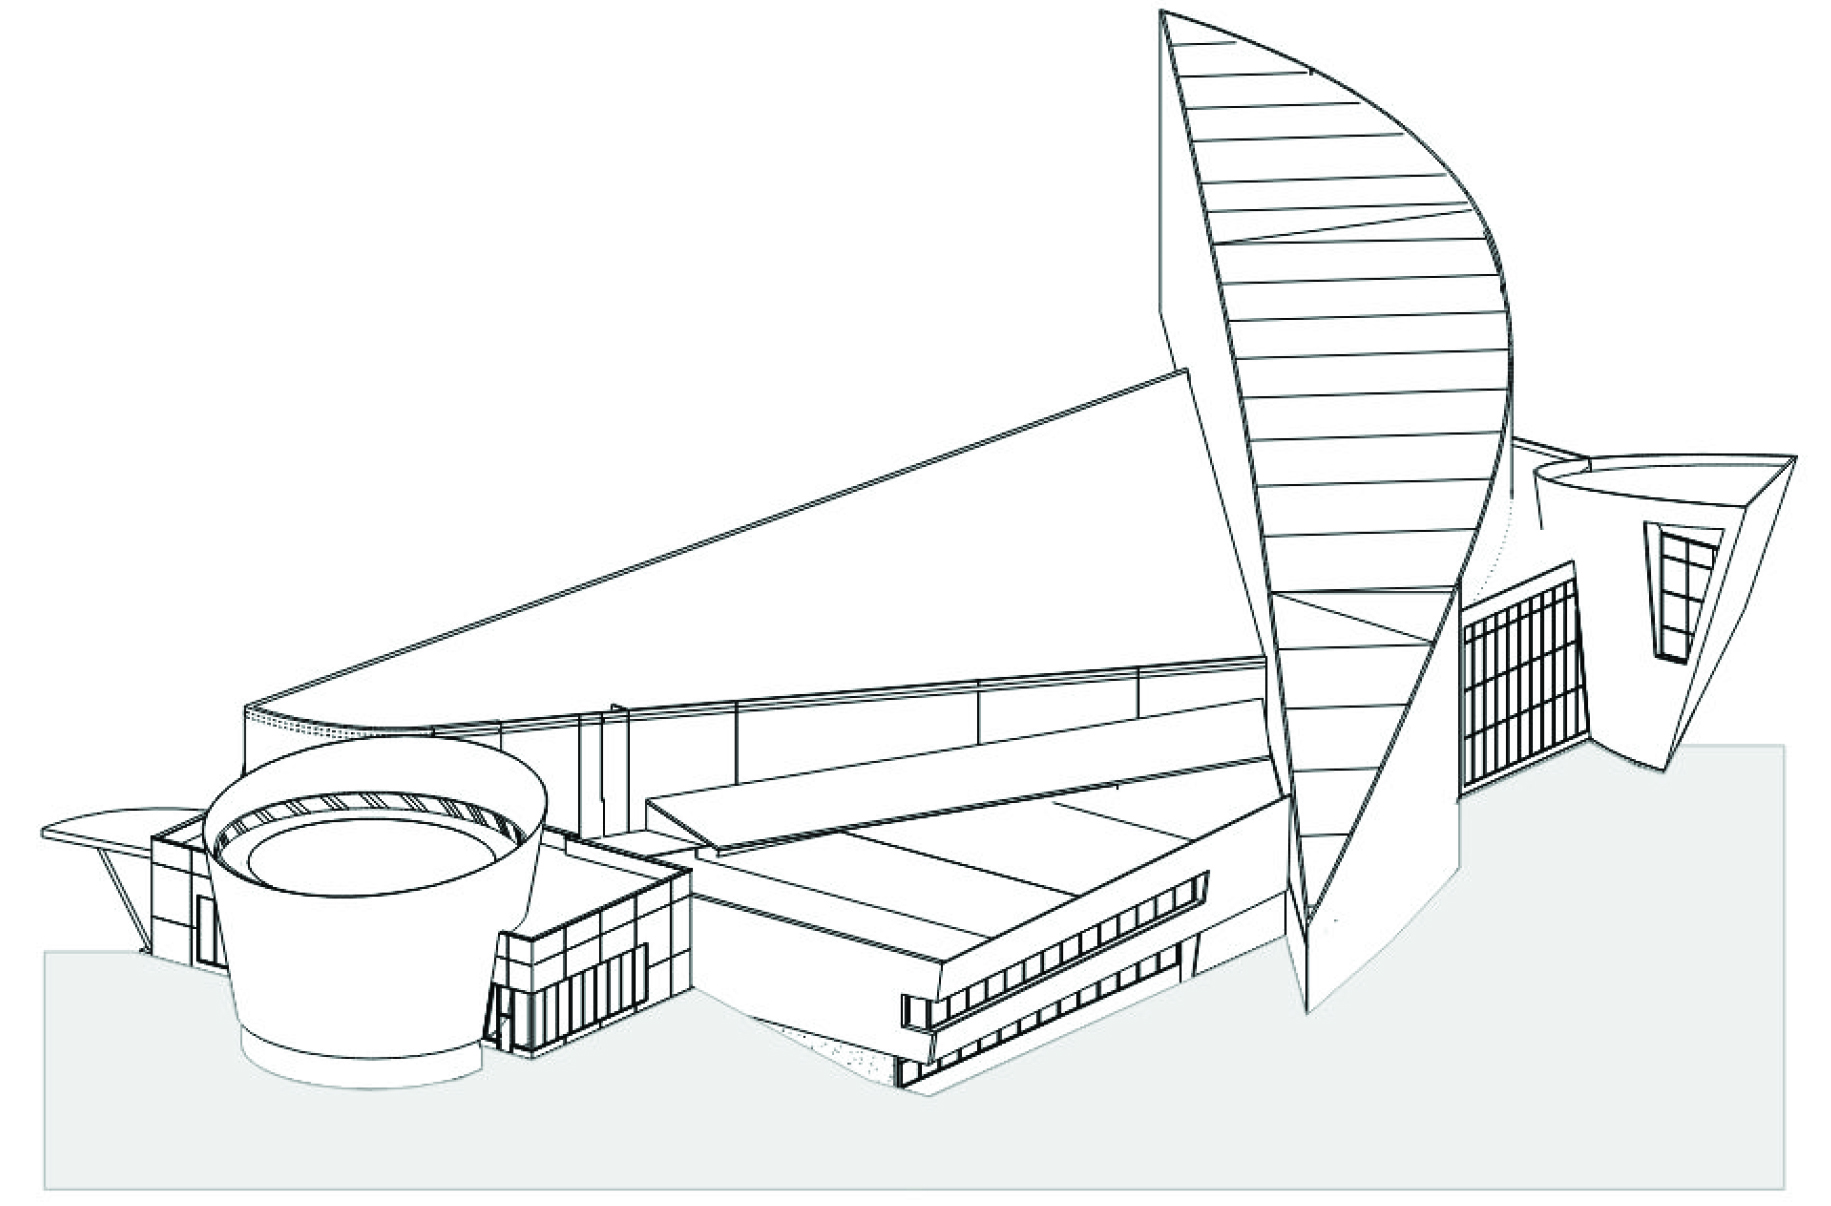 Sketch of UAMN & proposed planetarium.